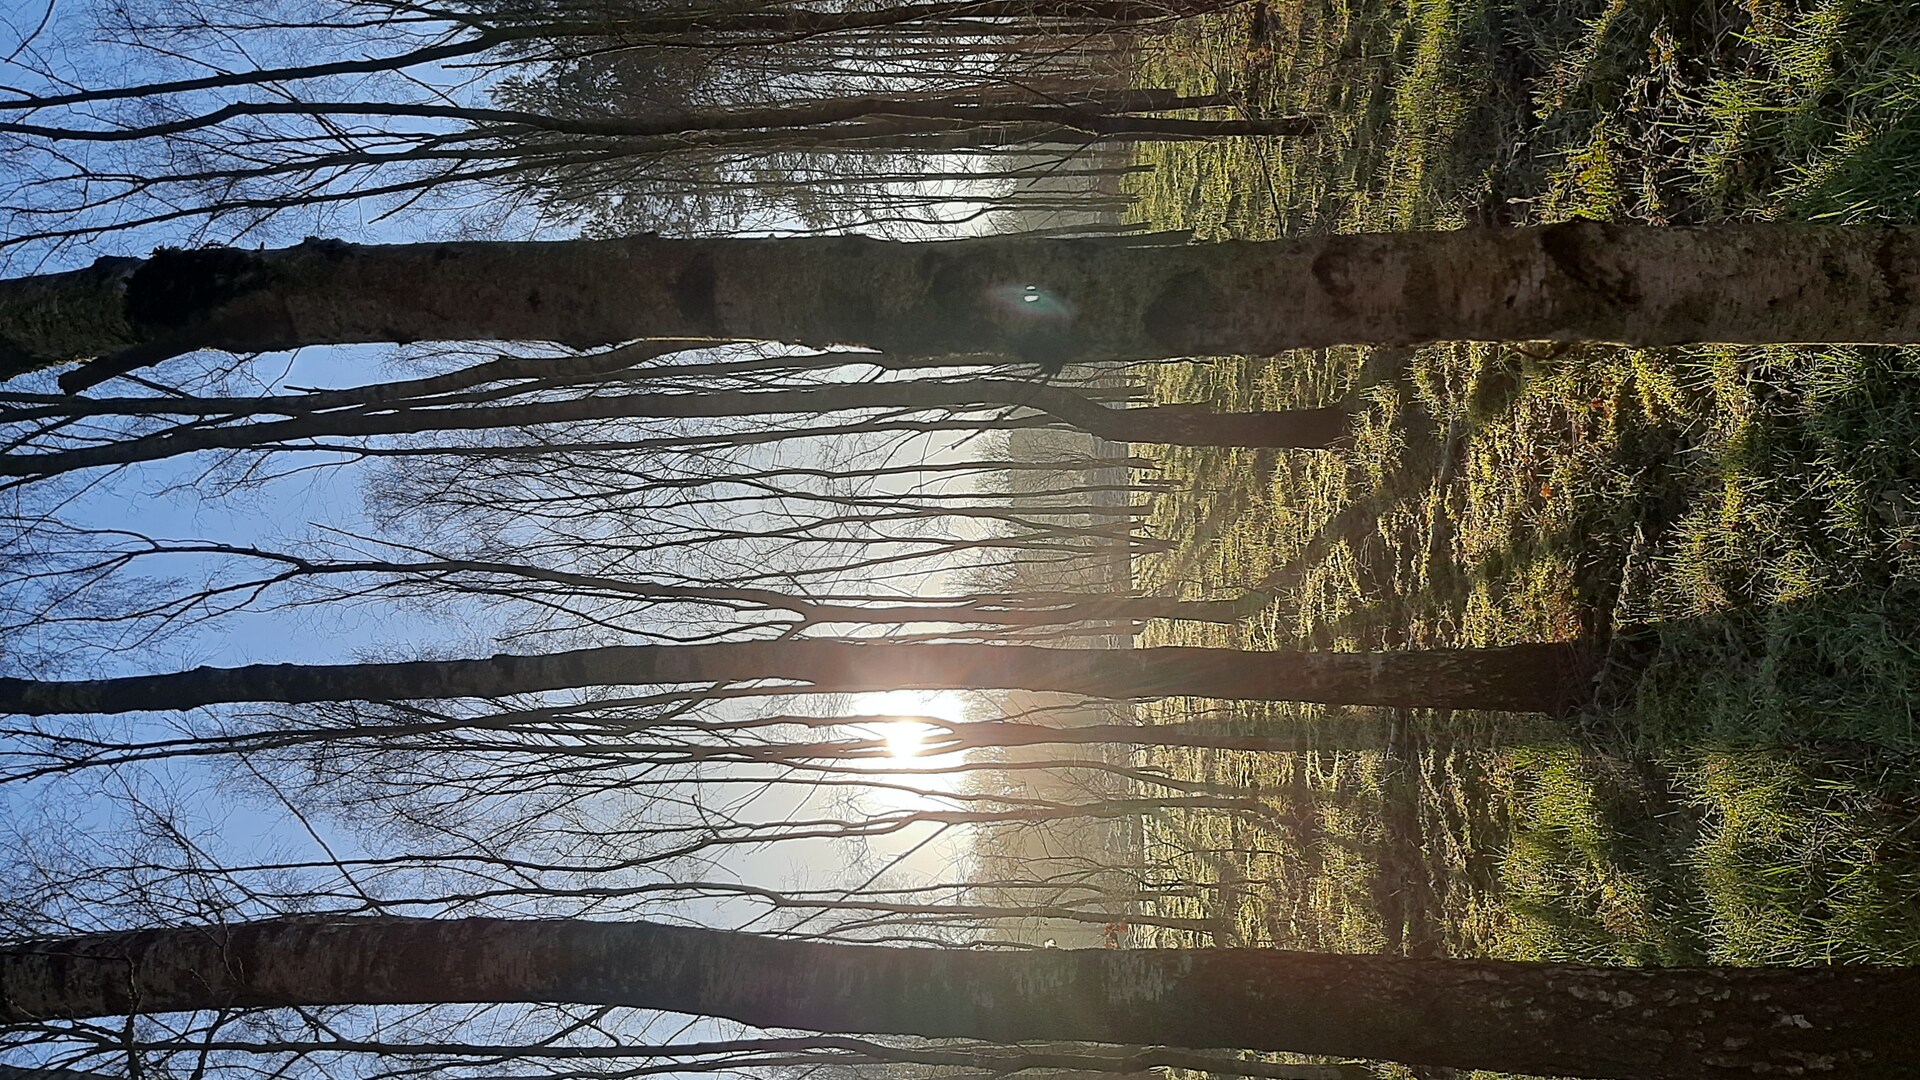 Zie de zon schijnt door de bomen